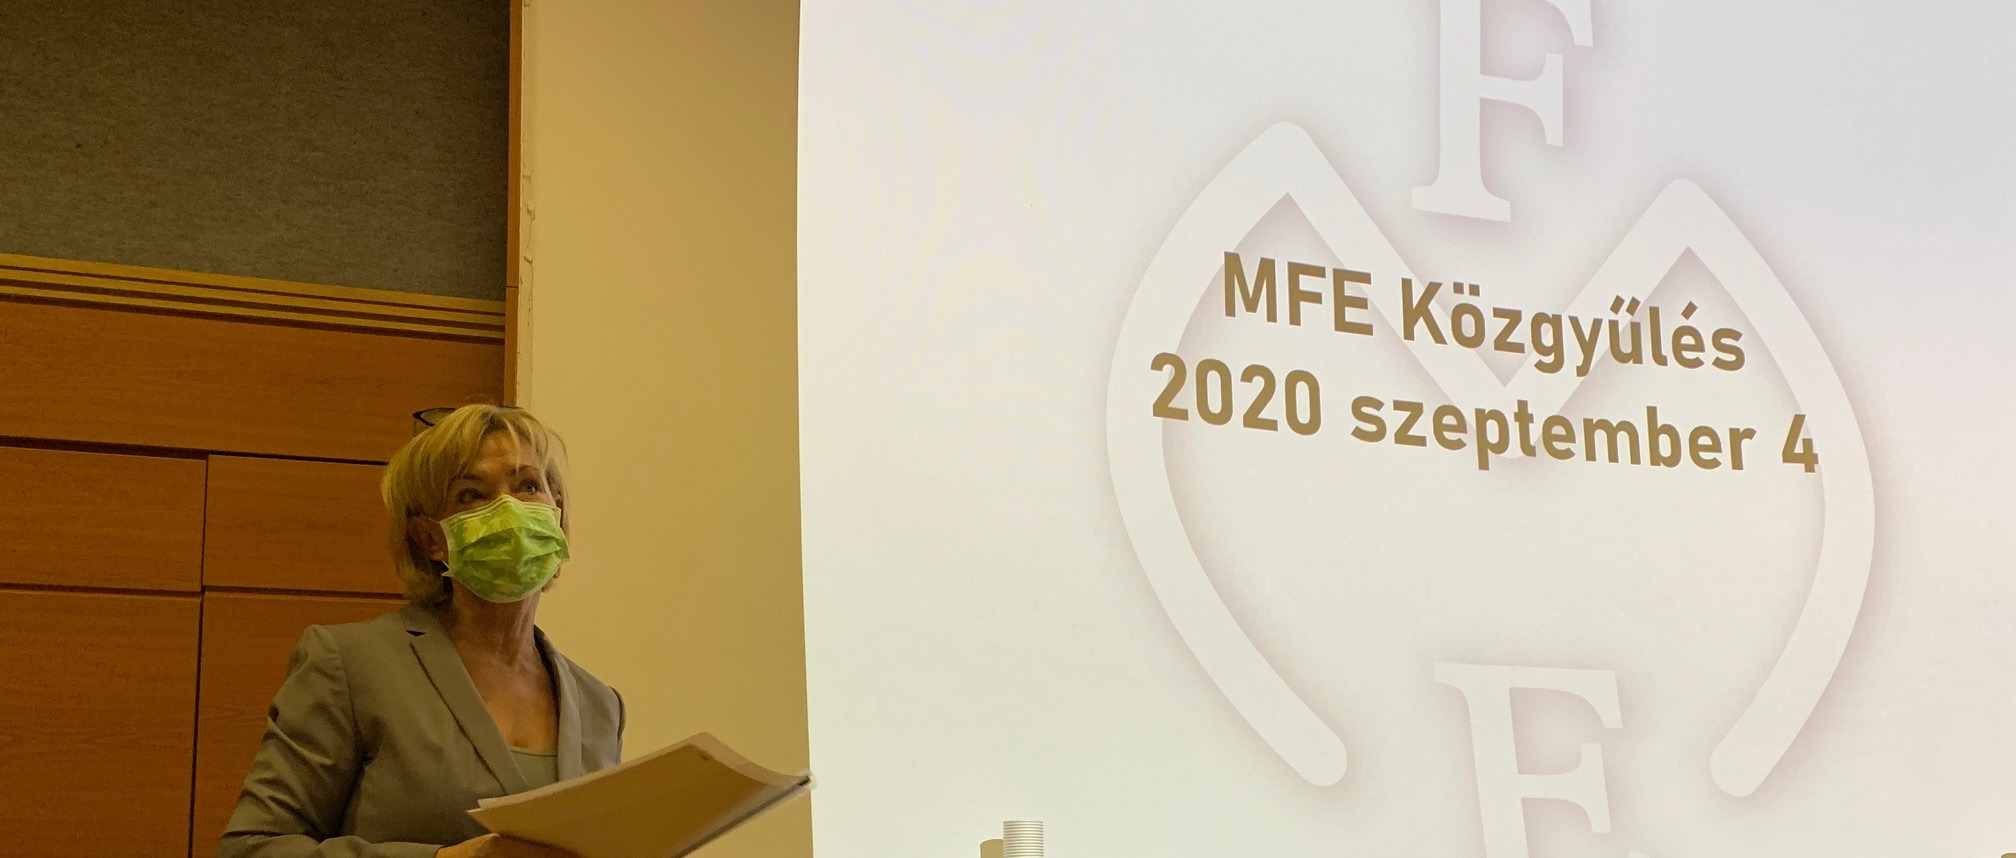 MFE Közgyűlés 2020. szeptember 4.